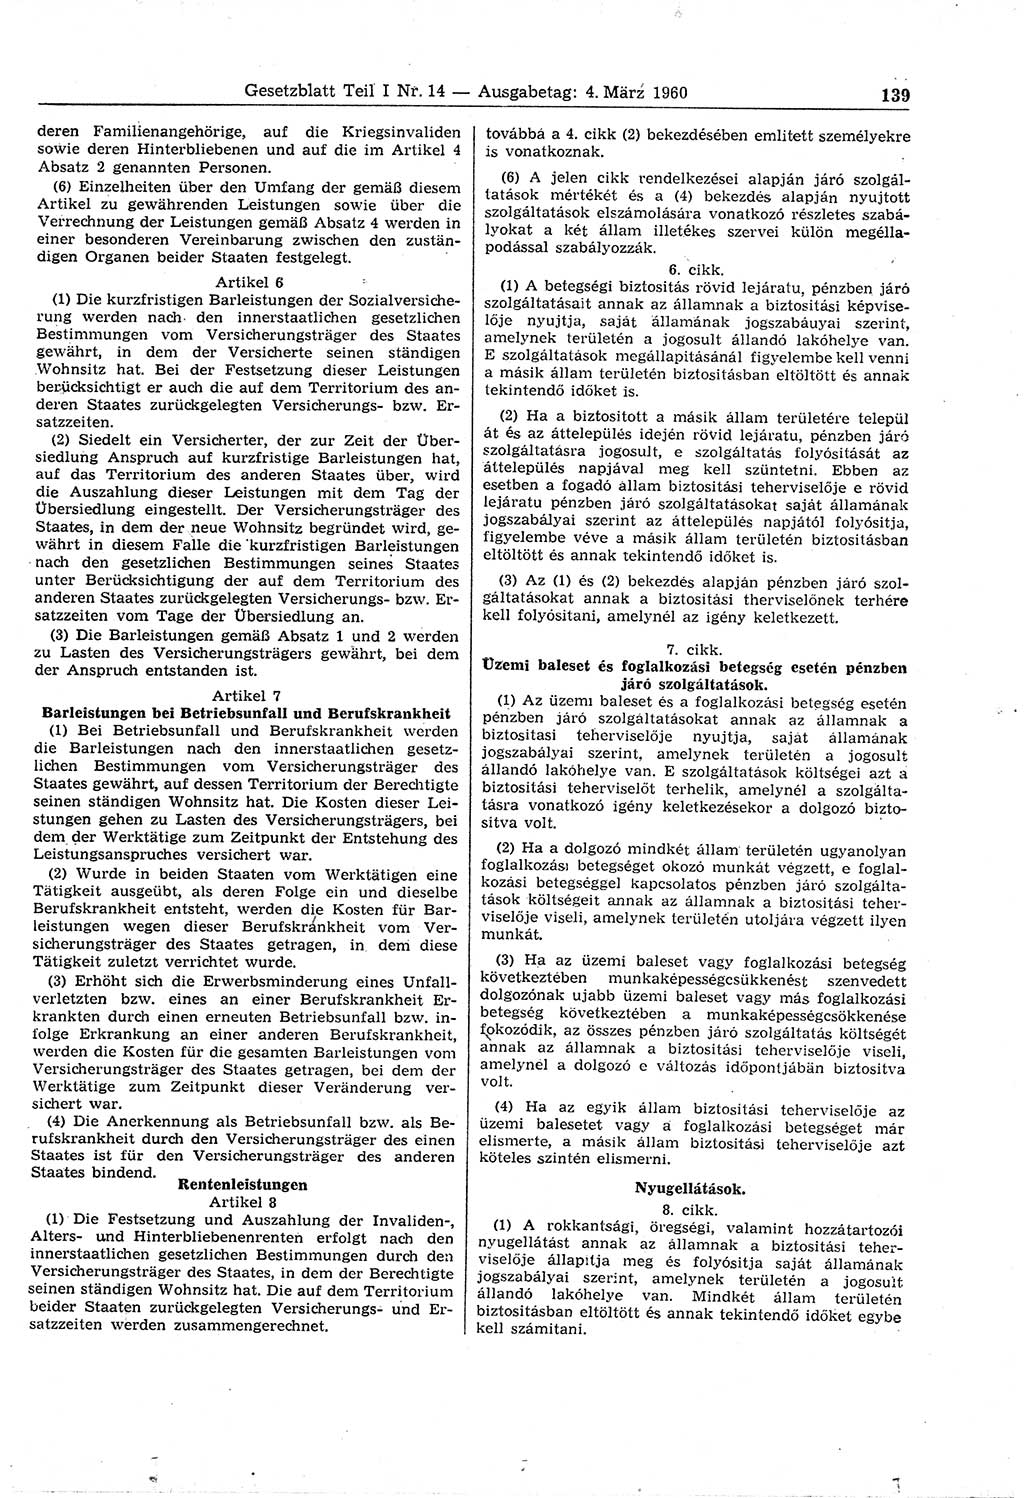 Gesetzblatt (GBl.) der Deutschen Demokratischen Republik (DDR) Teil Ⅰ 1960, Seite 139 (GBl. DDR Ⅰ 1960, S. 139)